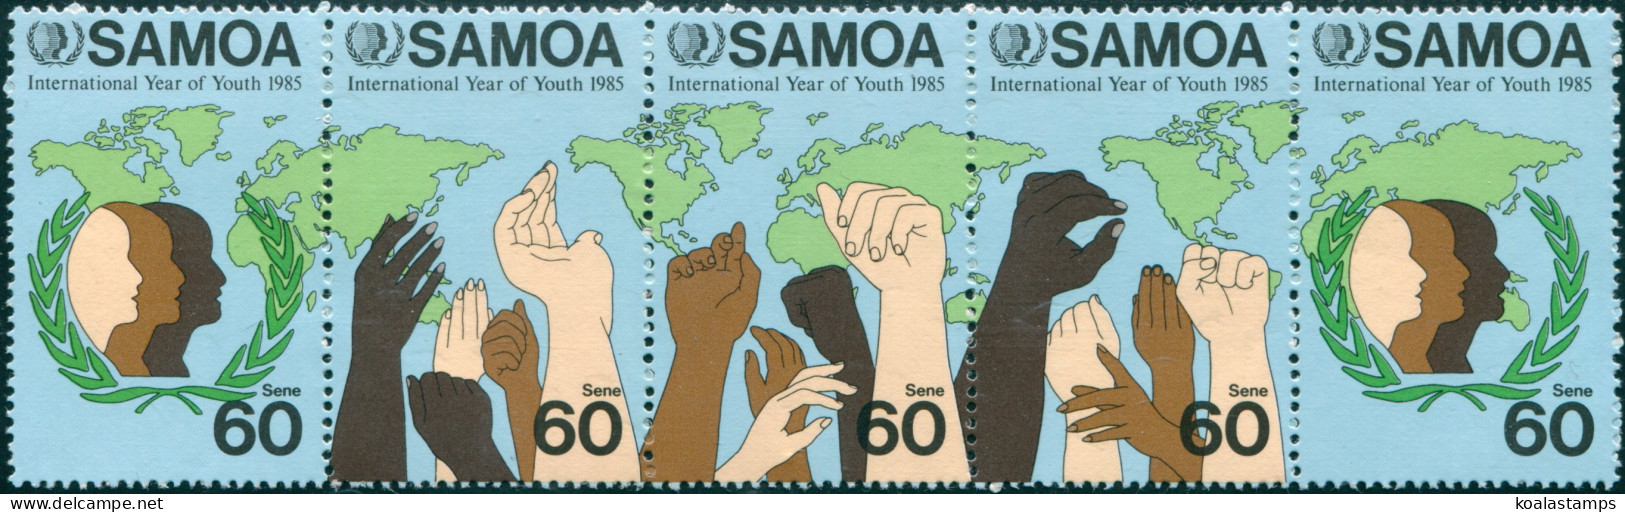 Samoa 1985 SG706a Youth Strip MNH - Samoa